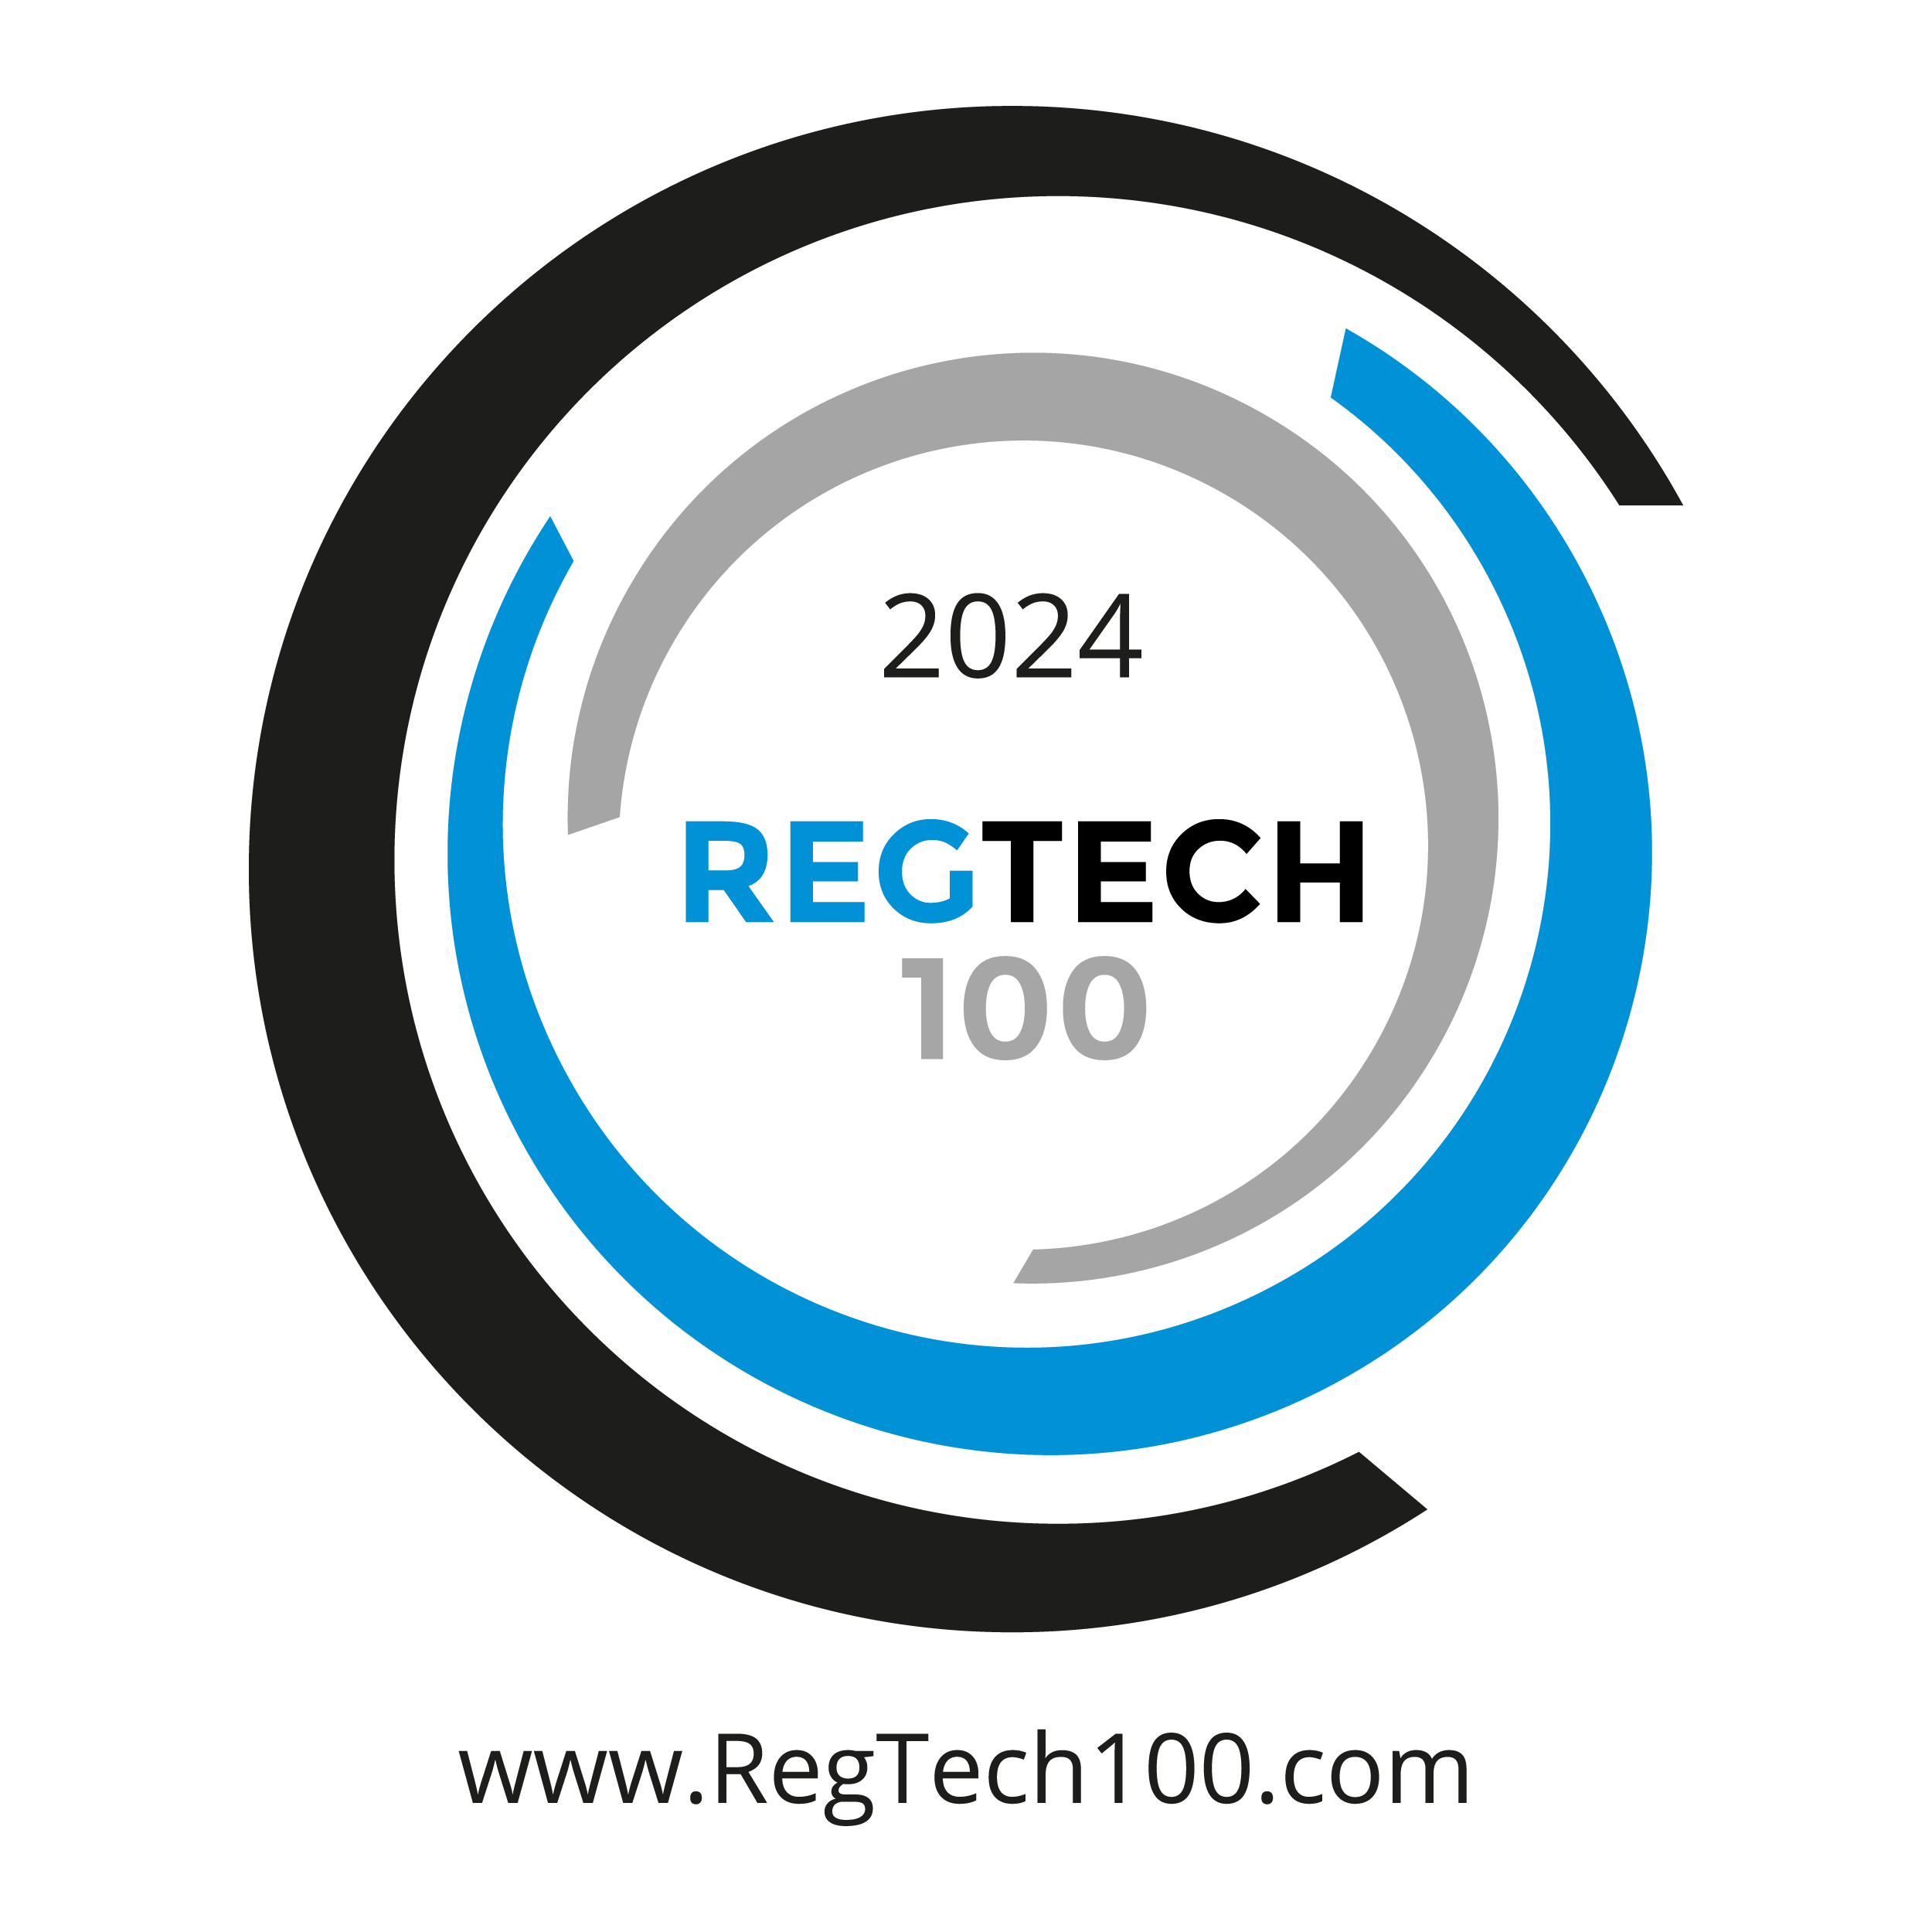 https://fintech.global/regtech100/